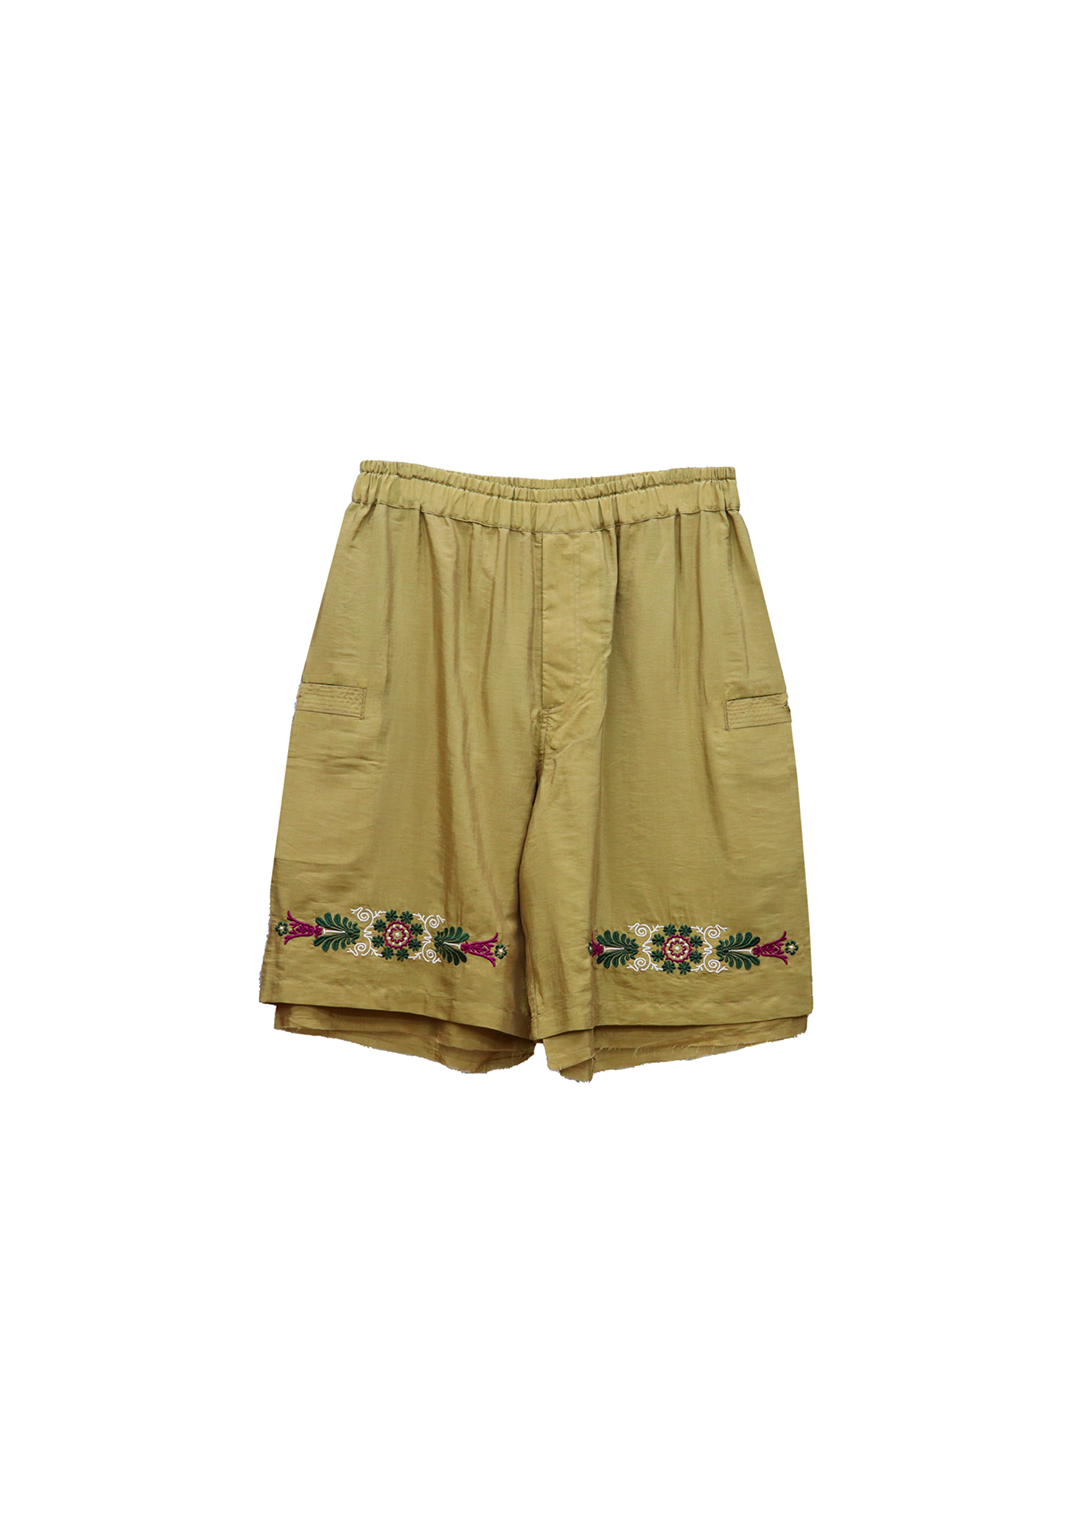 kurze hose ‹feinschmecker› embroidered shorts